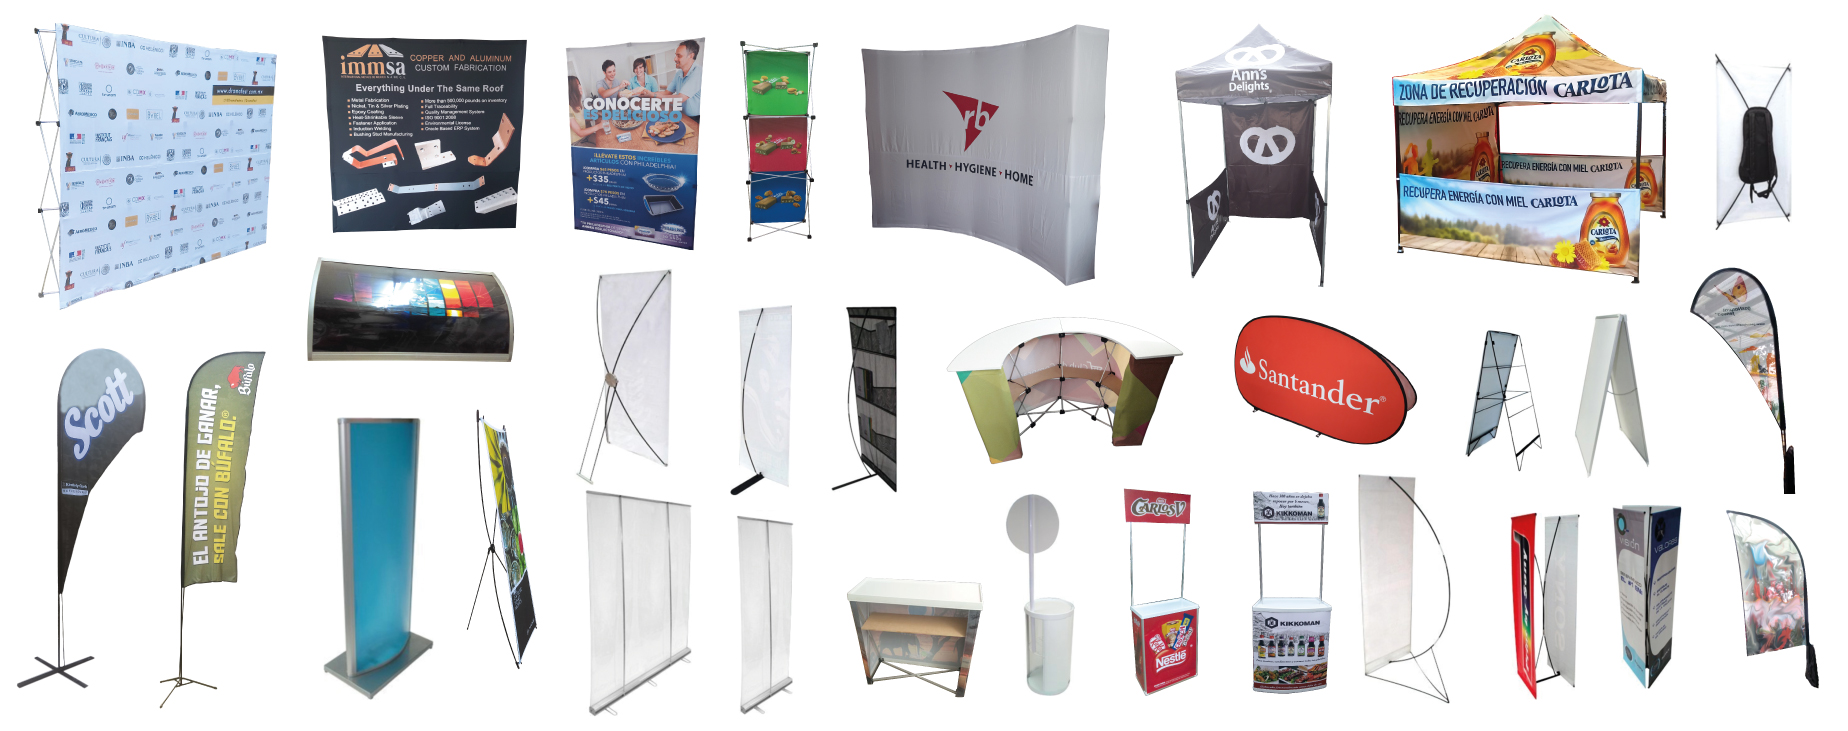 displays banners y exhibidores eventos promocionales y publicitarios lanzamientos degustaciones promocion exhibición ferias exposiciones stands congresos convenciones